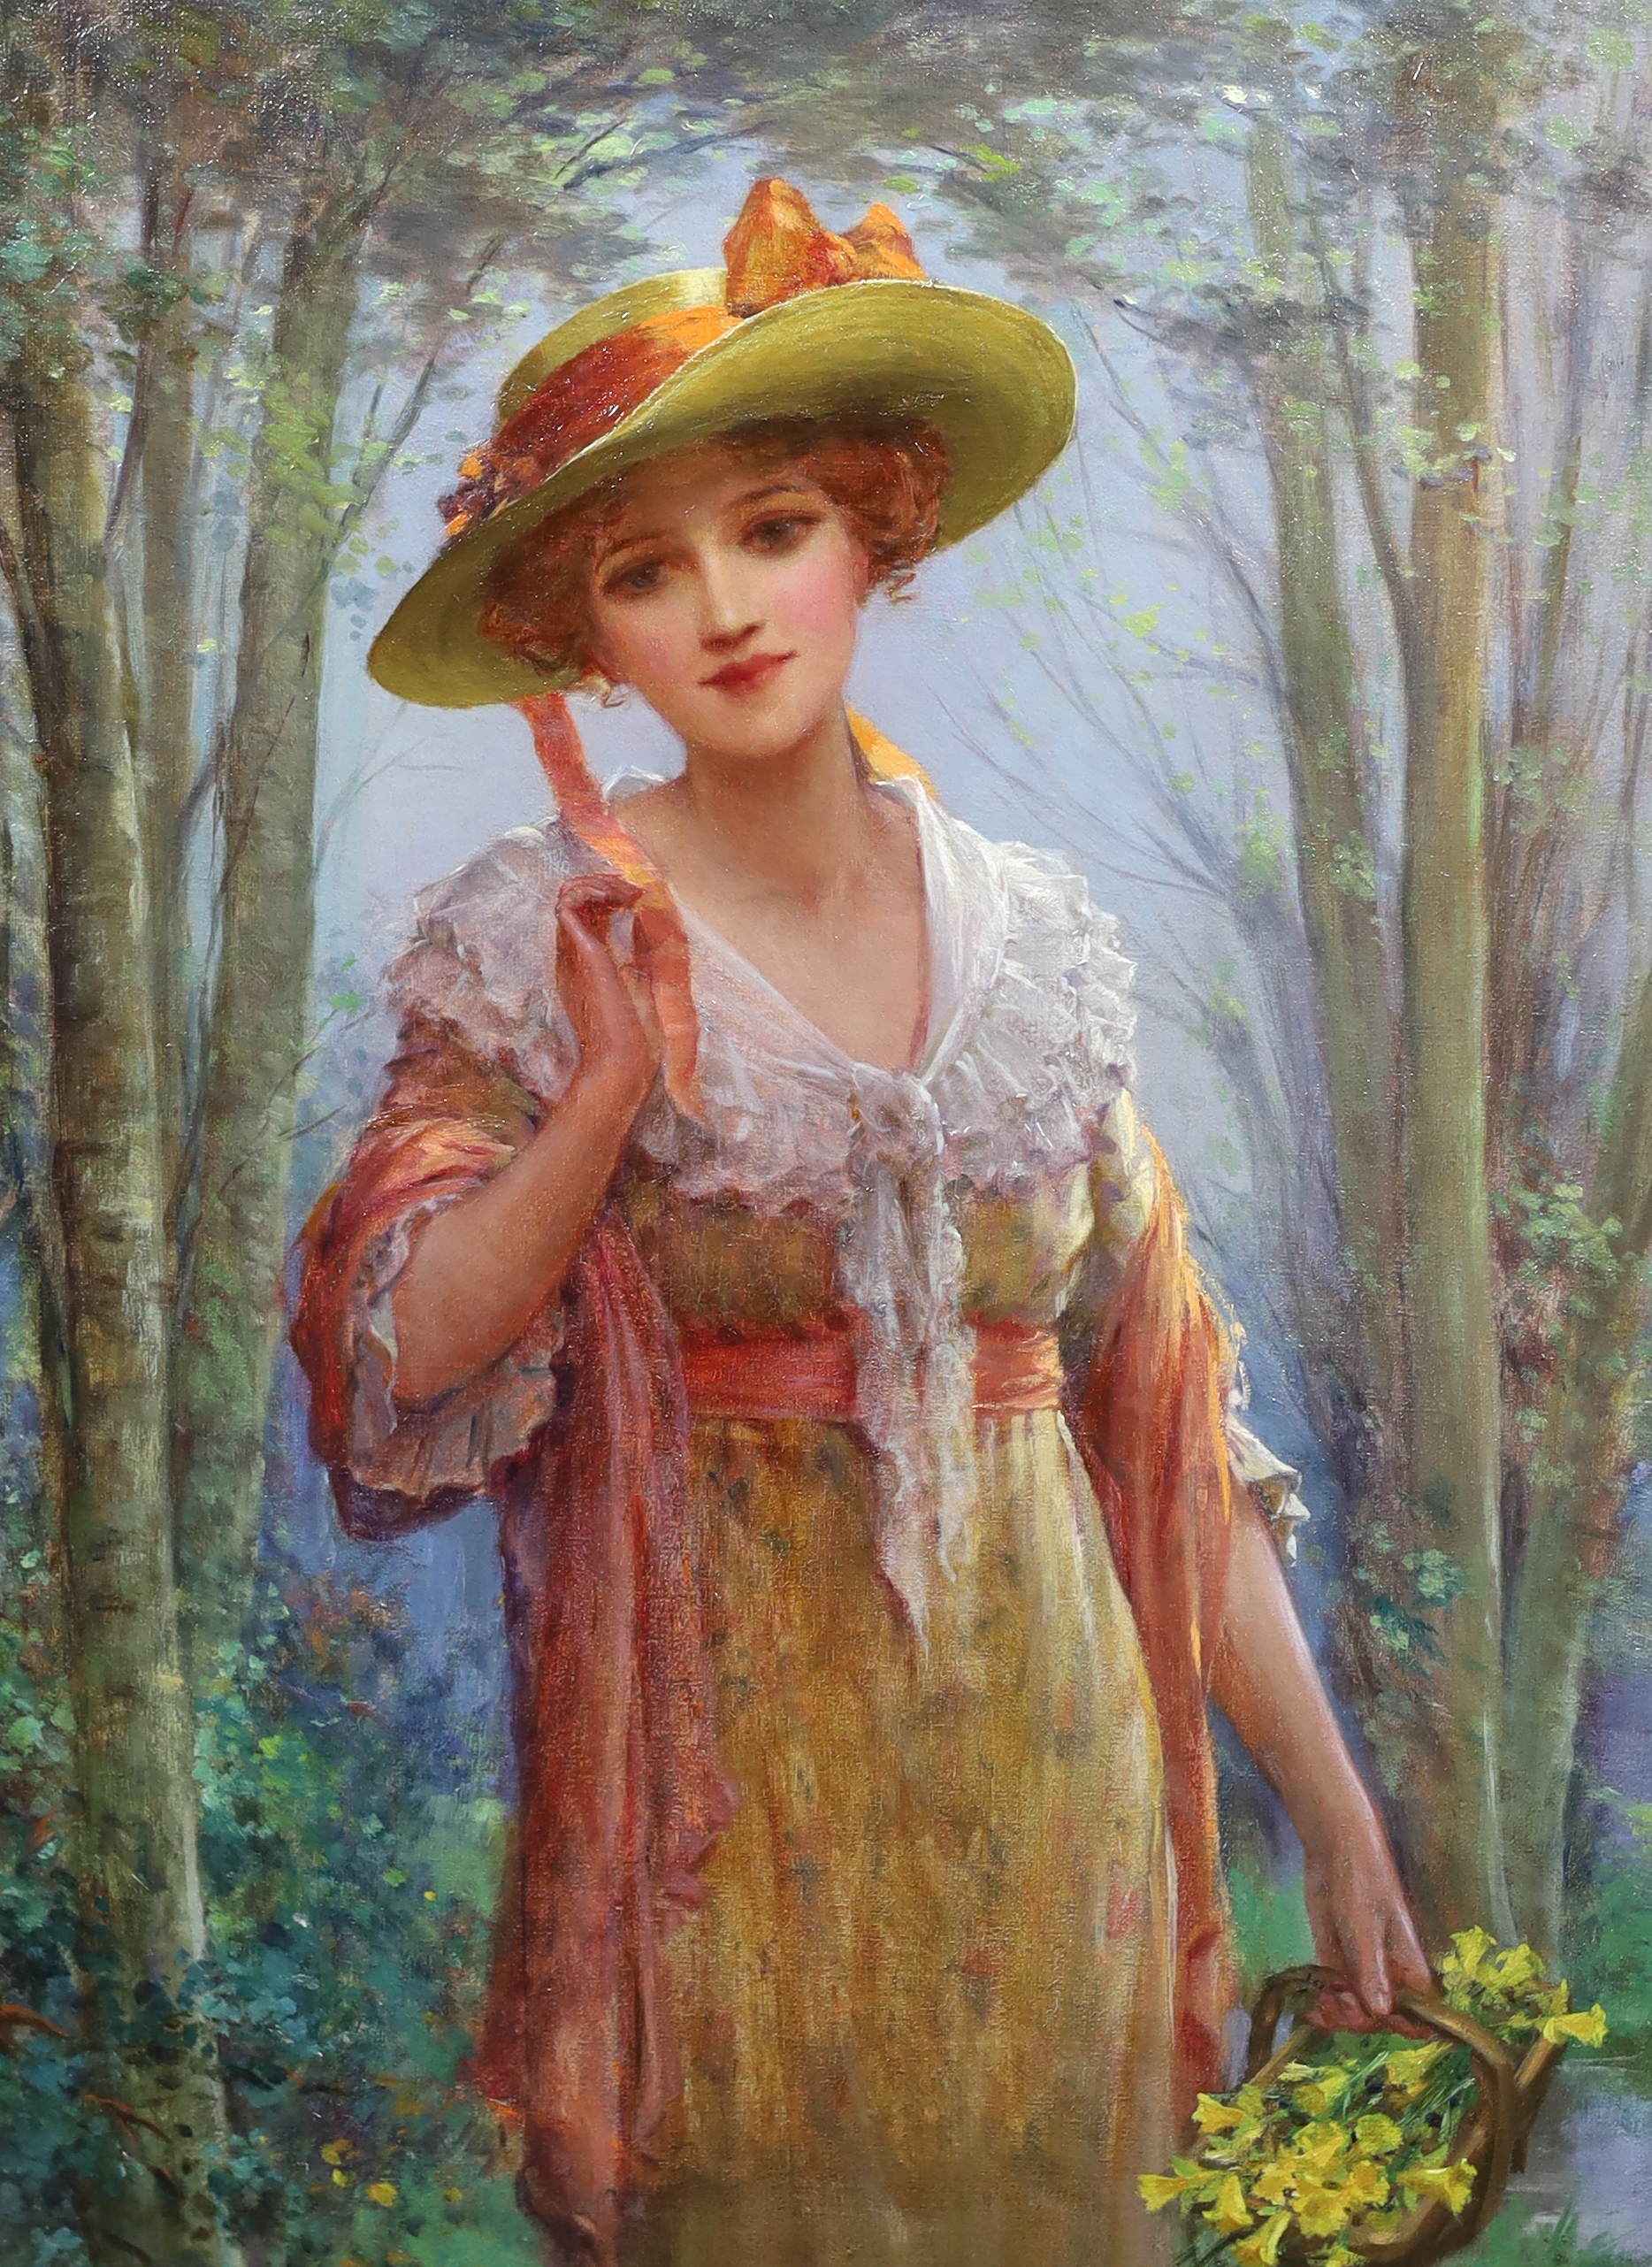 Sydney Percy Kendrick (English, 1874-1955), 'Gathering Daffodils', oil on canvas, 55 x 40cm